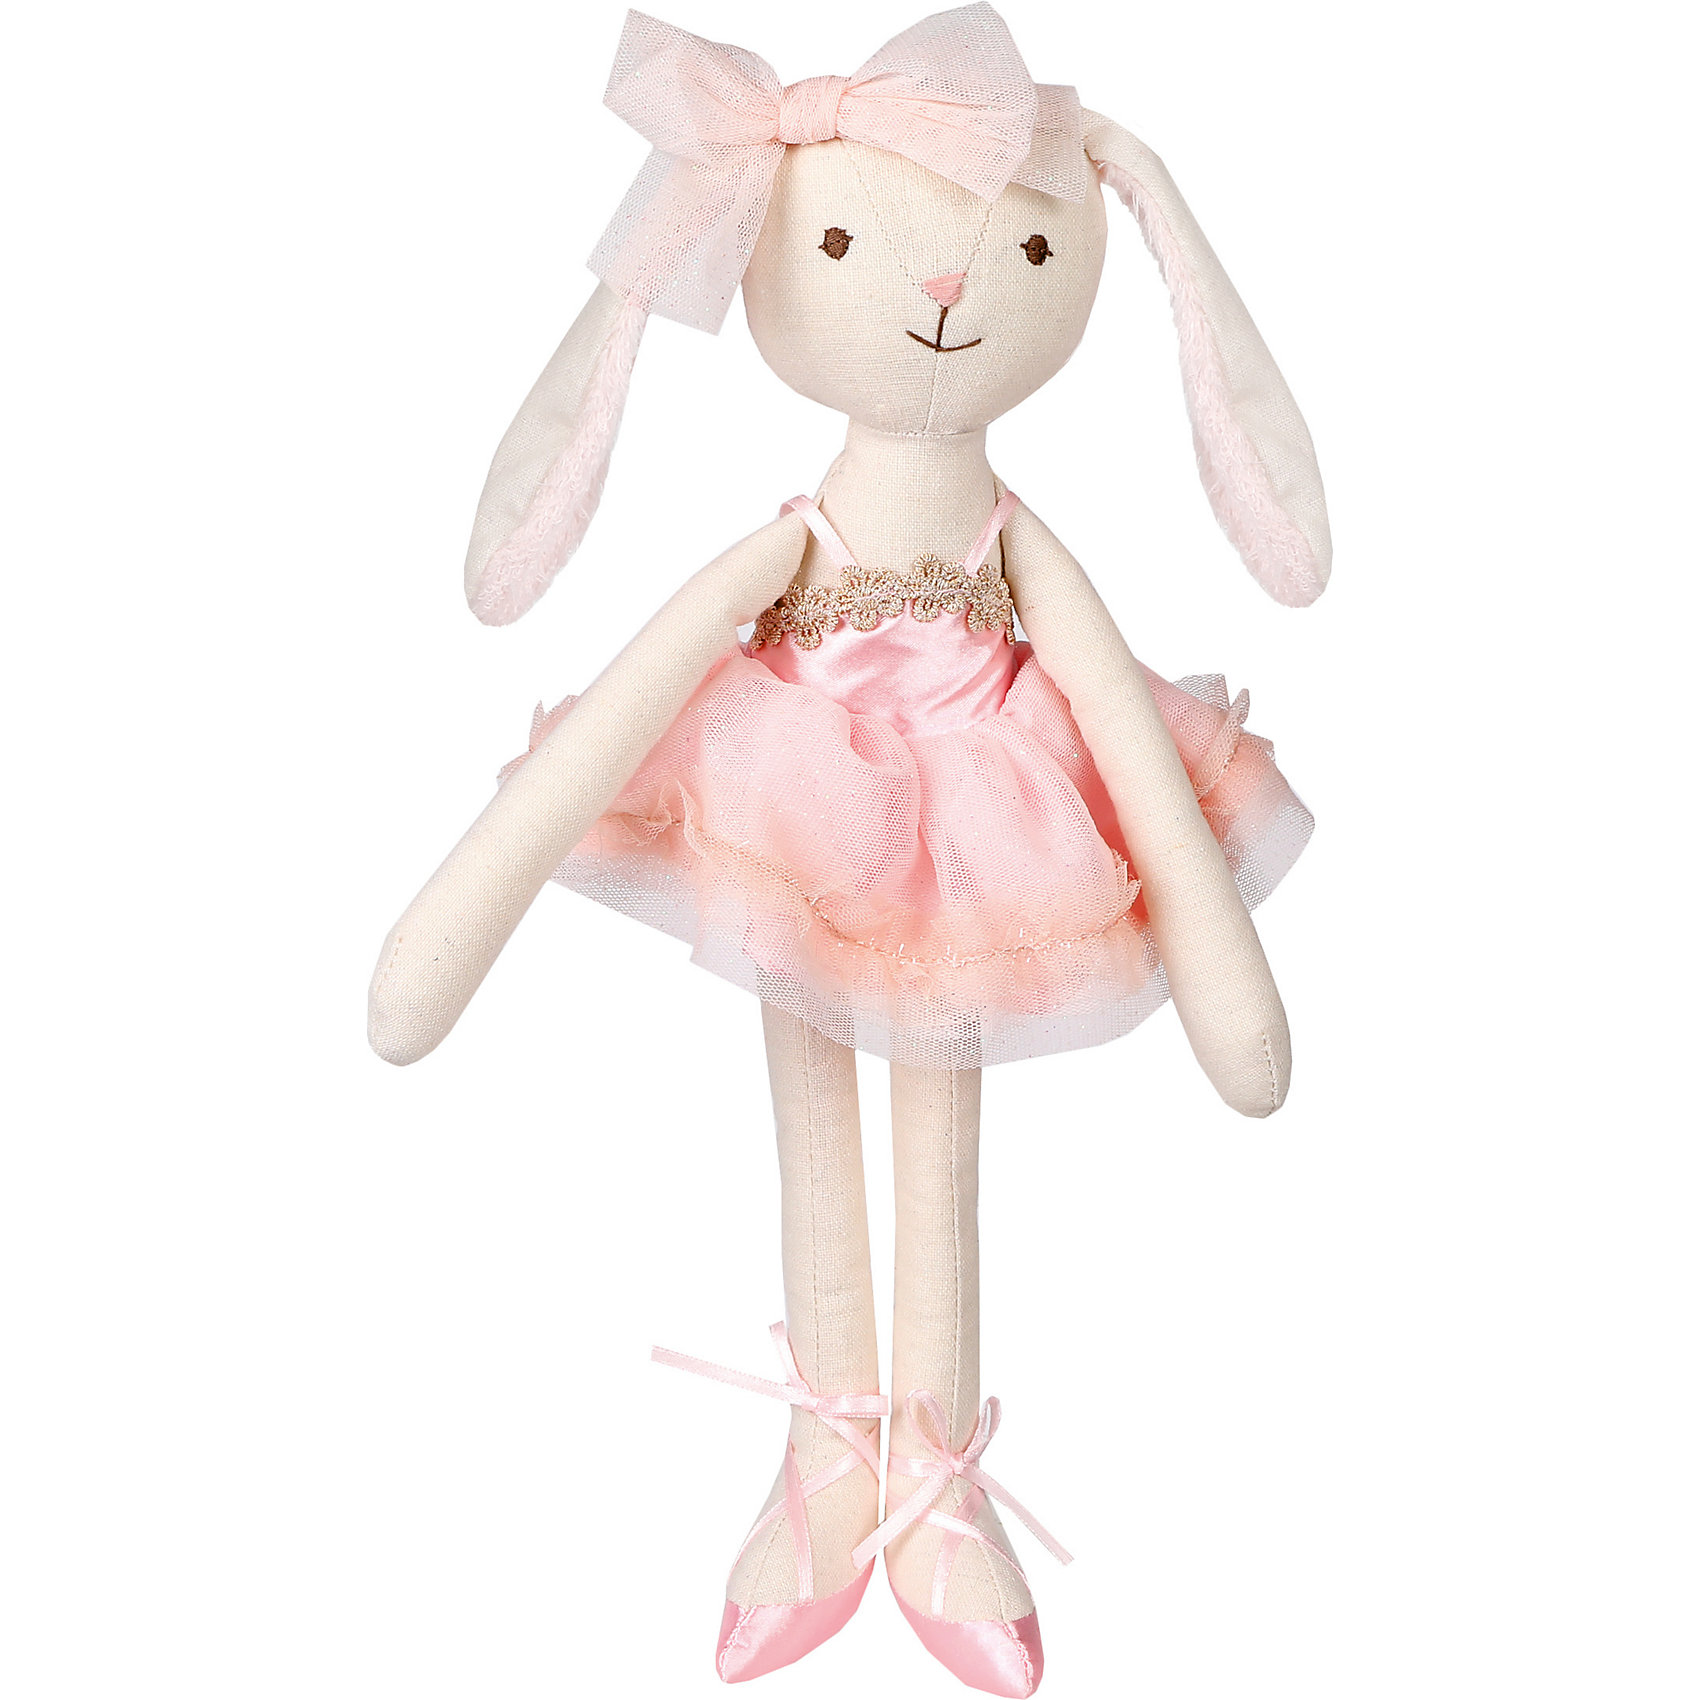 Мягкая игрушка "Зайка тильда", 36 см, бело-розовая Angel Collection 12969748